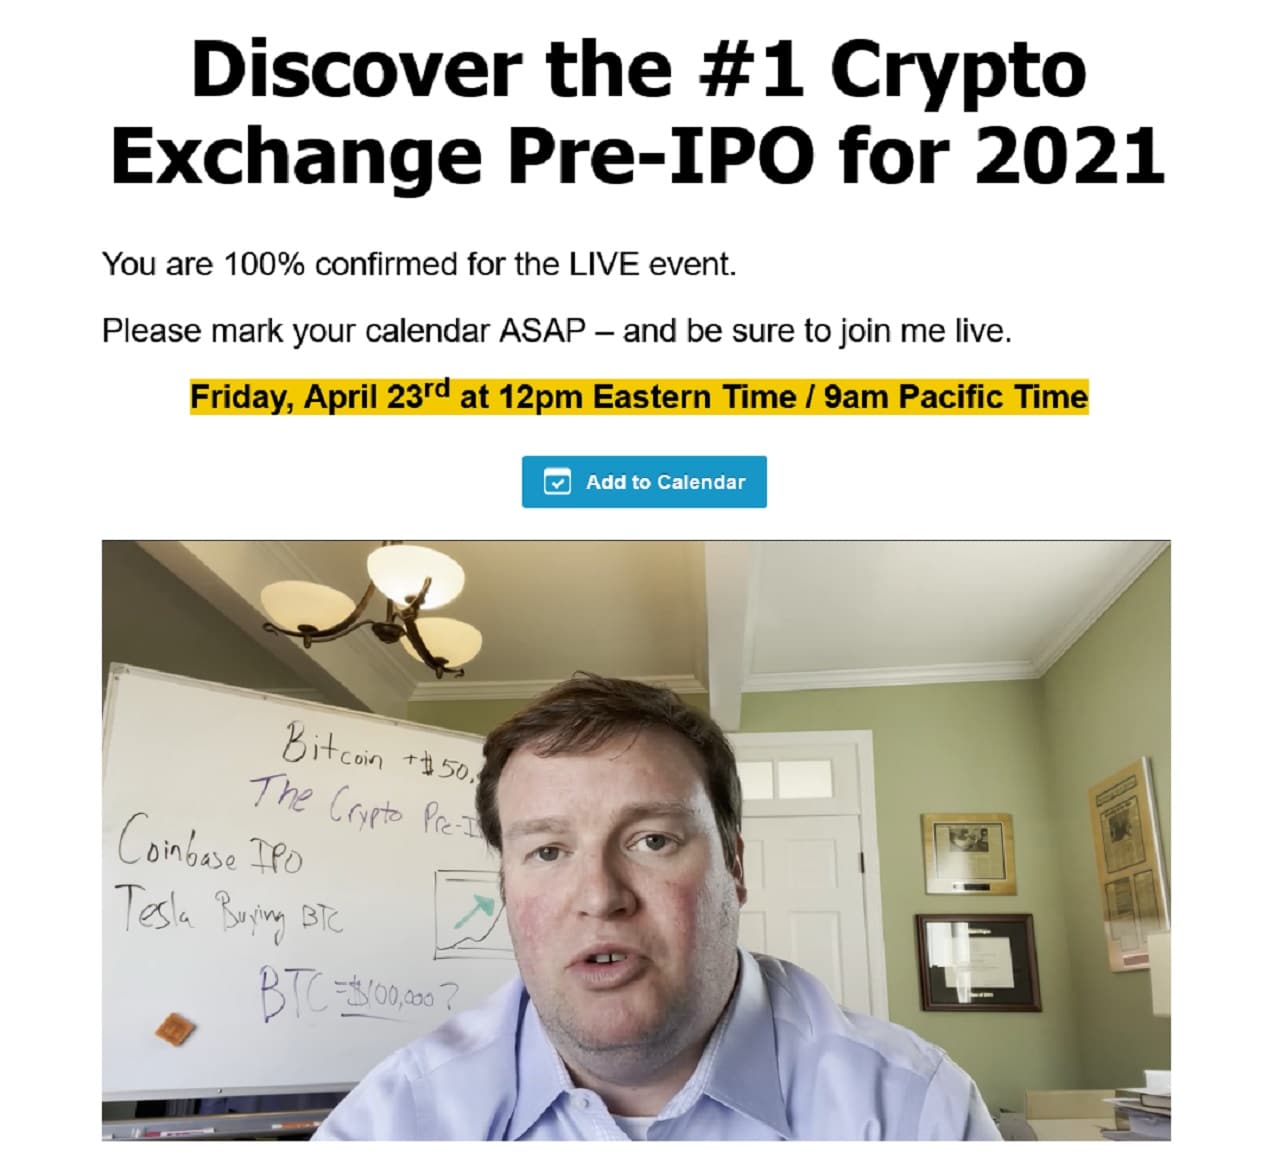 Ian Wyatt's #1 Crypto Exchange Pre-IPO for 2021 Event